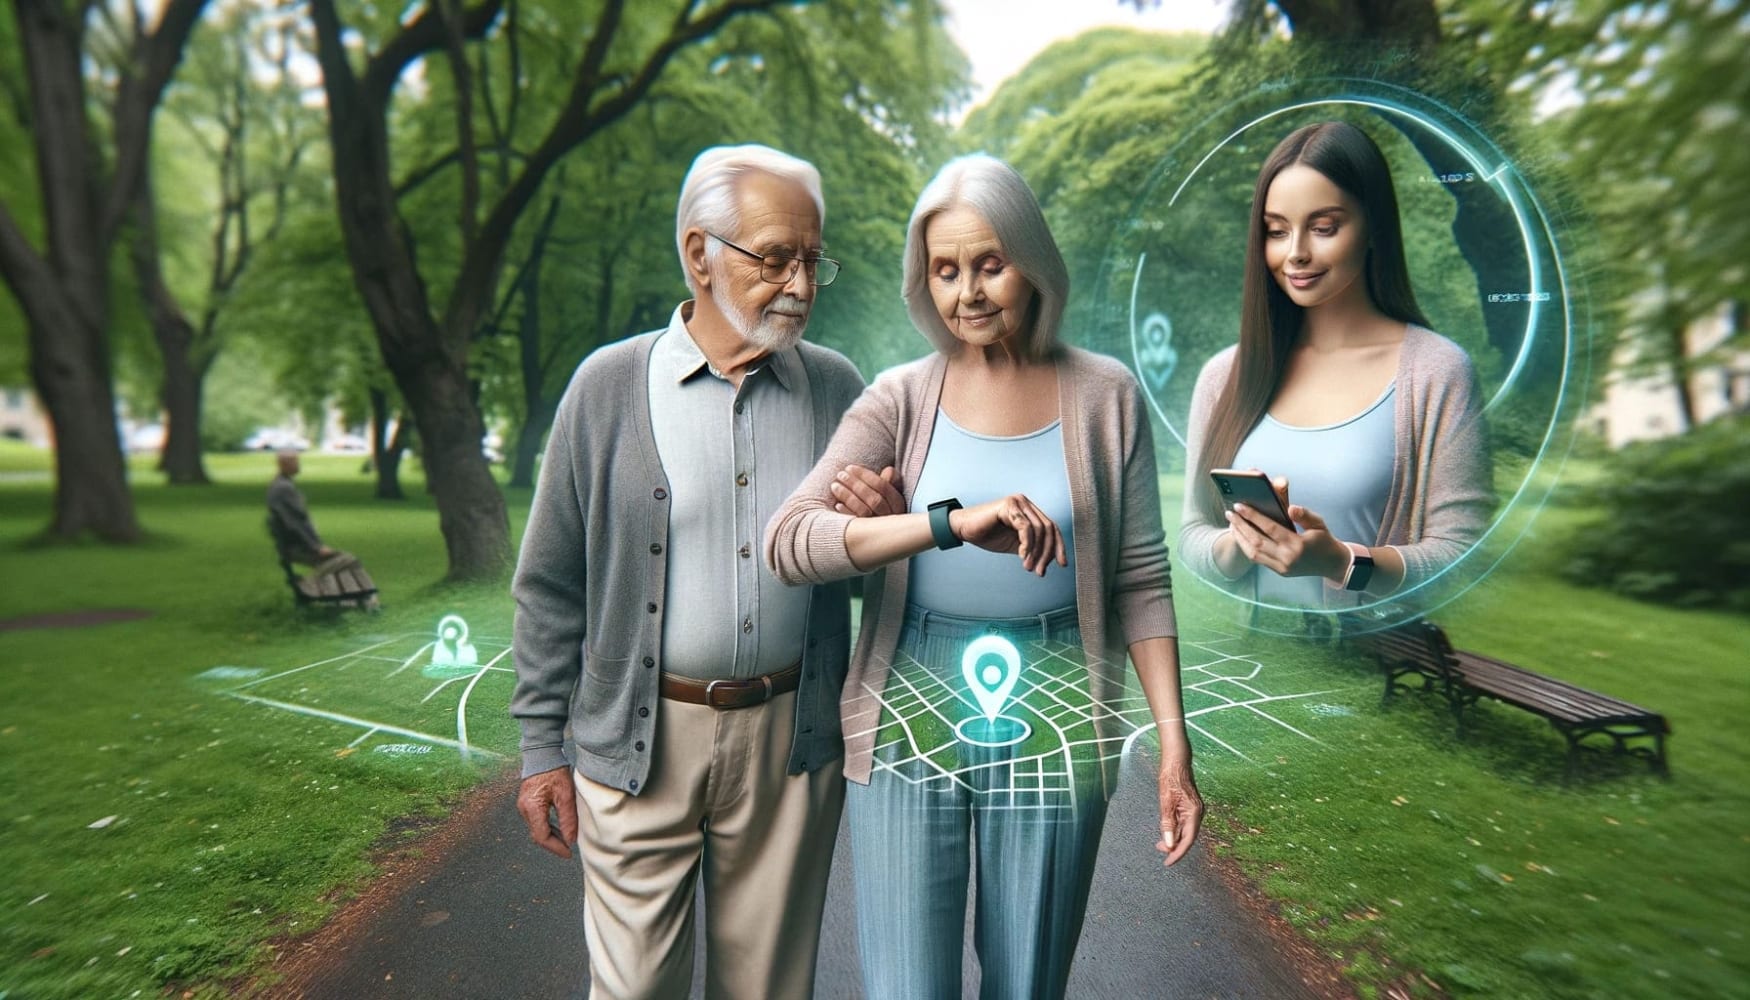 Un hombre mayor y una mujer de pie uno al lado del otro en un parque mirando sus relojes, árboles verdes alrededor y algunas cuadrículas de geolocalización, con una chica a la derecha en un círculo mirando su teléfono